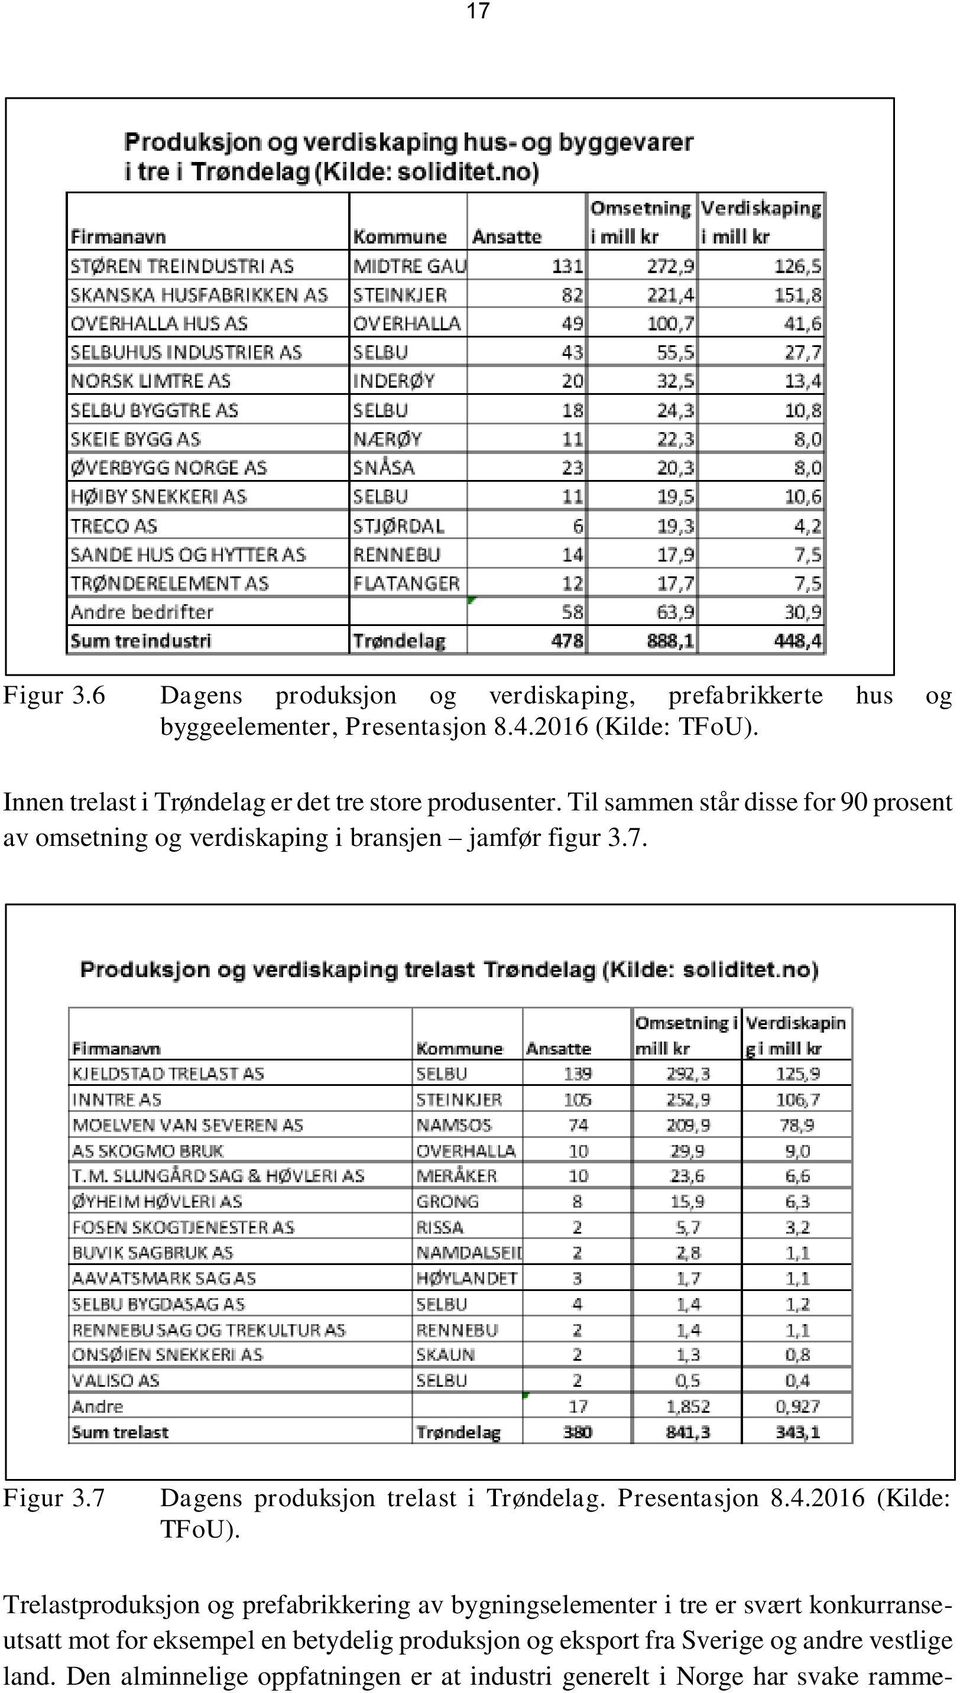 Figur 3.7 Dagens produksjon trelast i Trøndelag. Presentasjon 8.4.2016 (Kilde: TFoU).